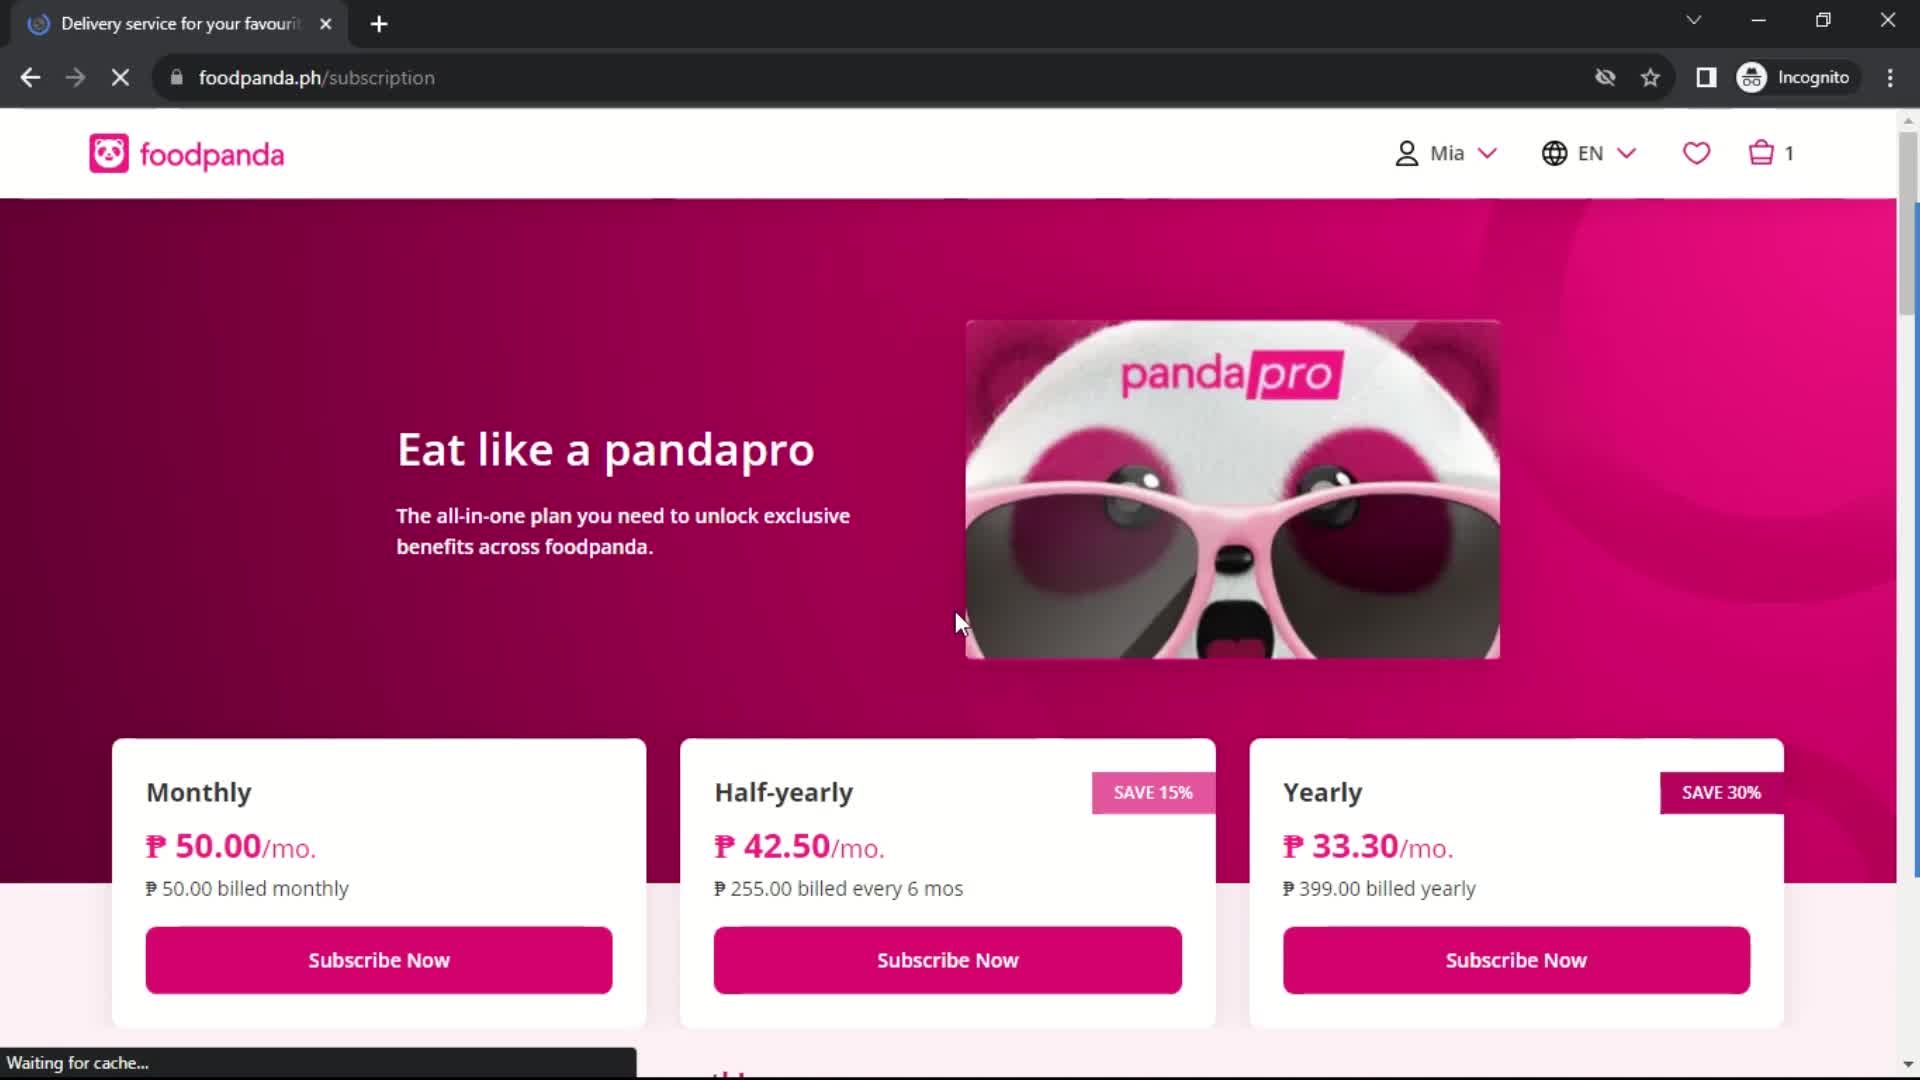 foodpanda pricing & plans screenshot